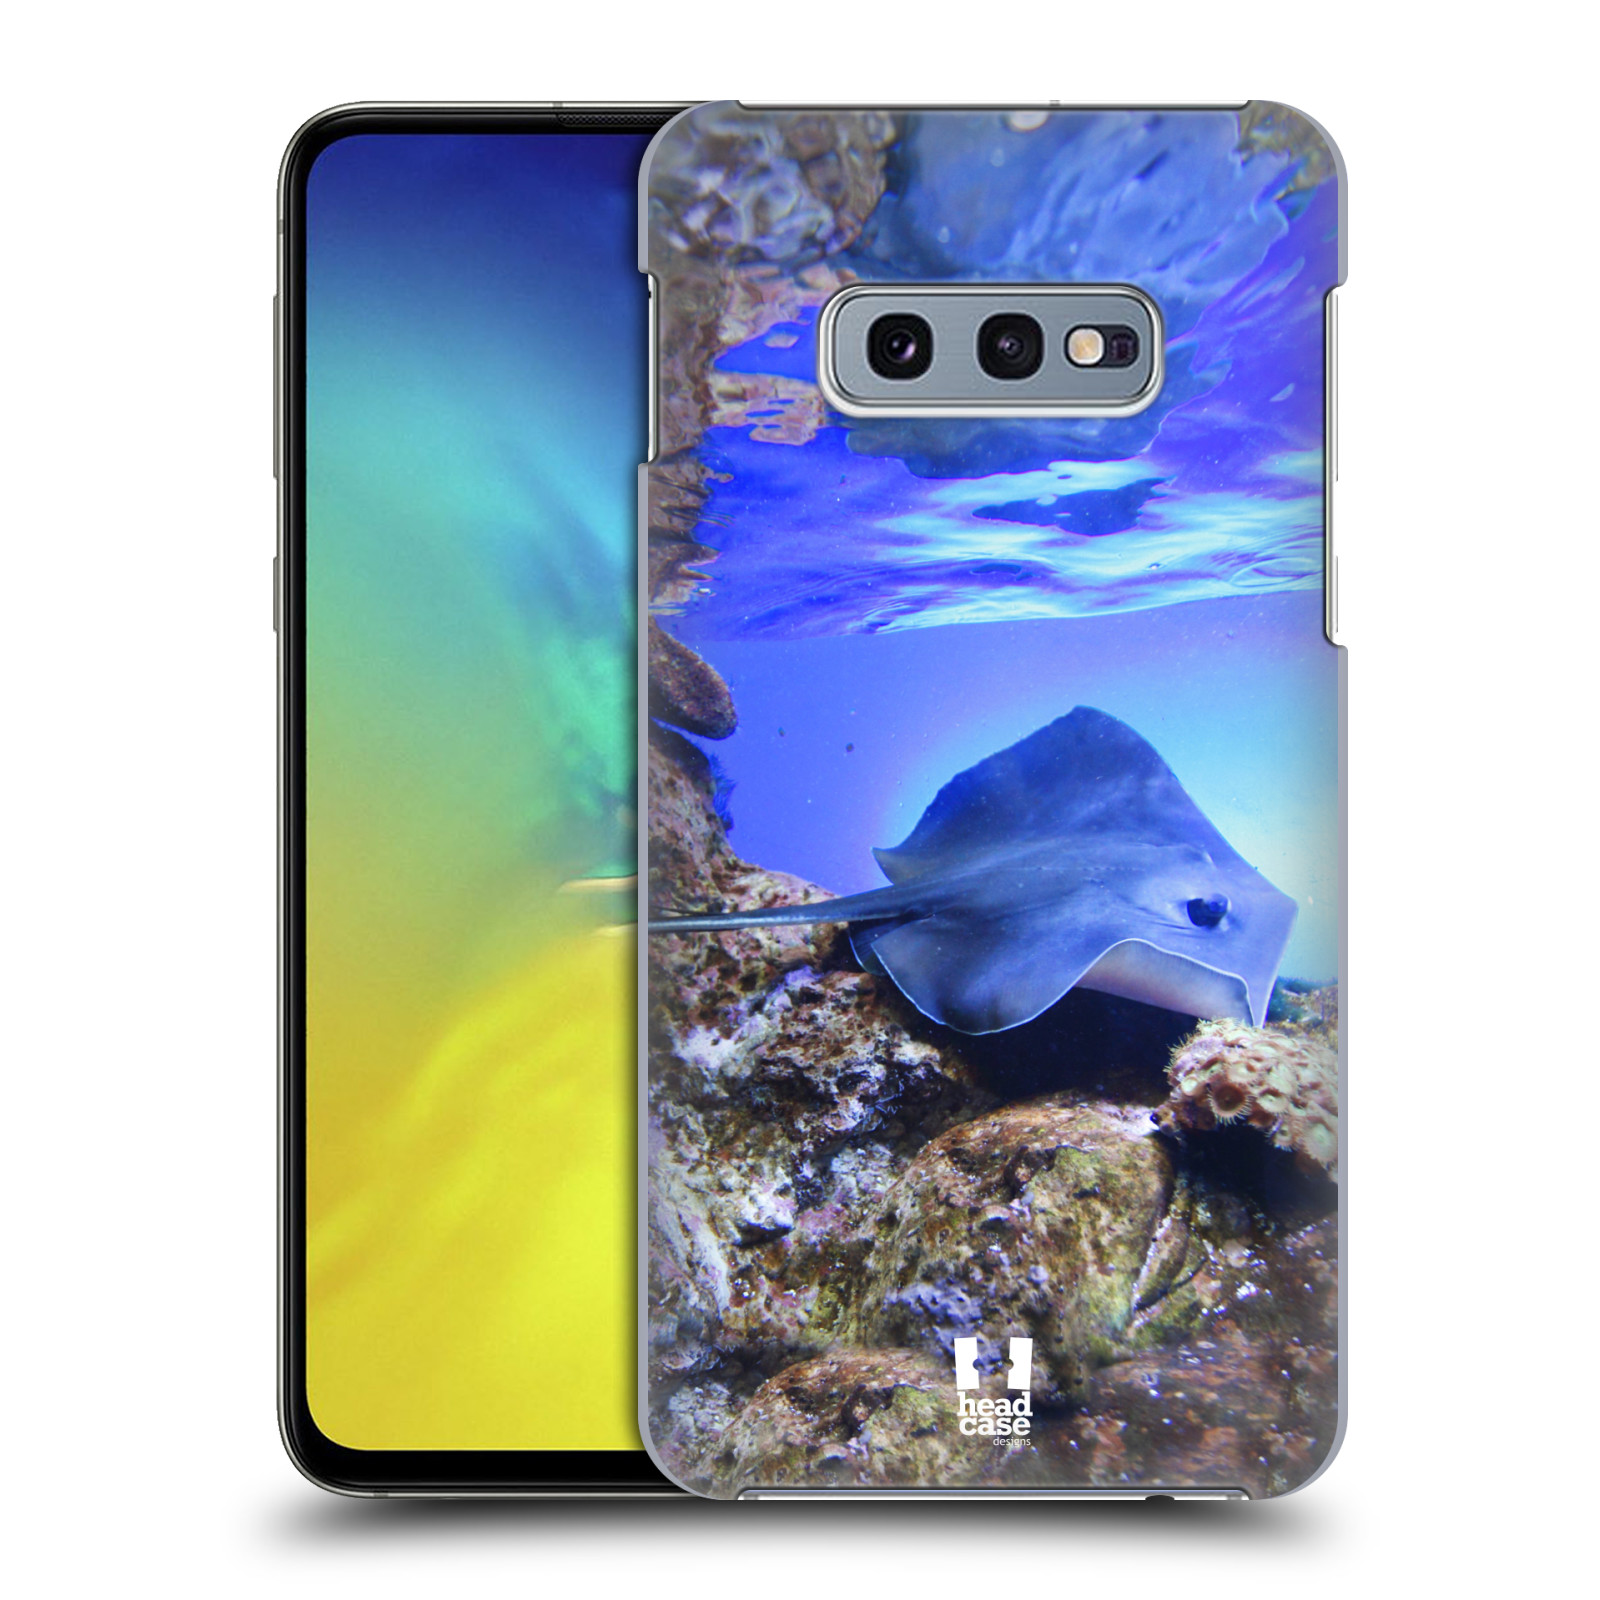 Pouzdro na mobil Samsung Galaxy S10e - HEAD CASE - vzor slavná zvířata foto rejnok